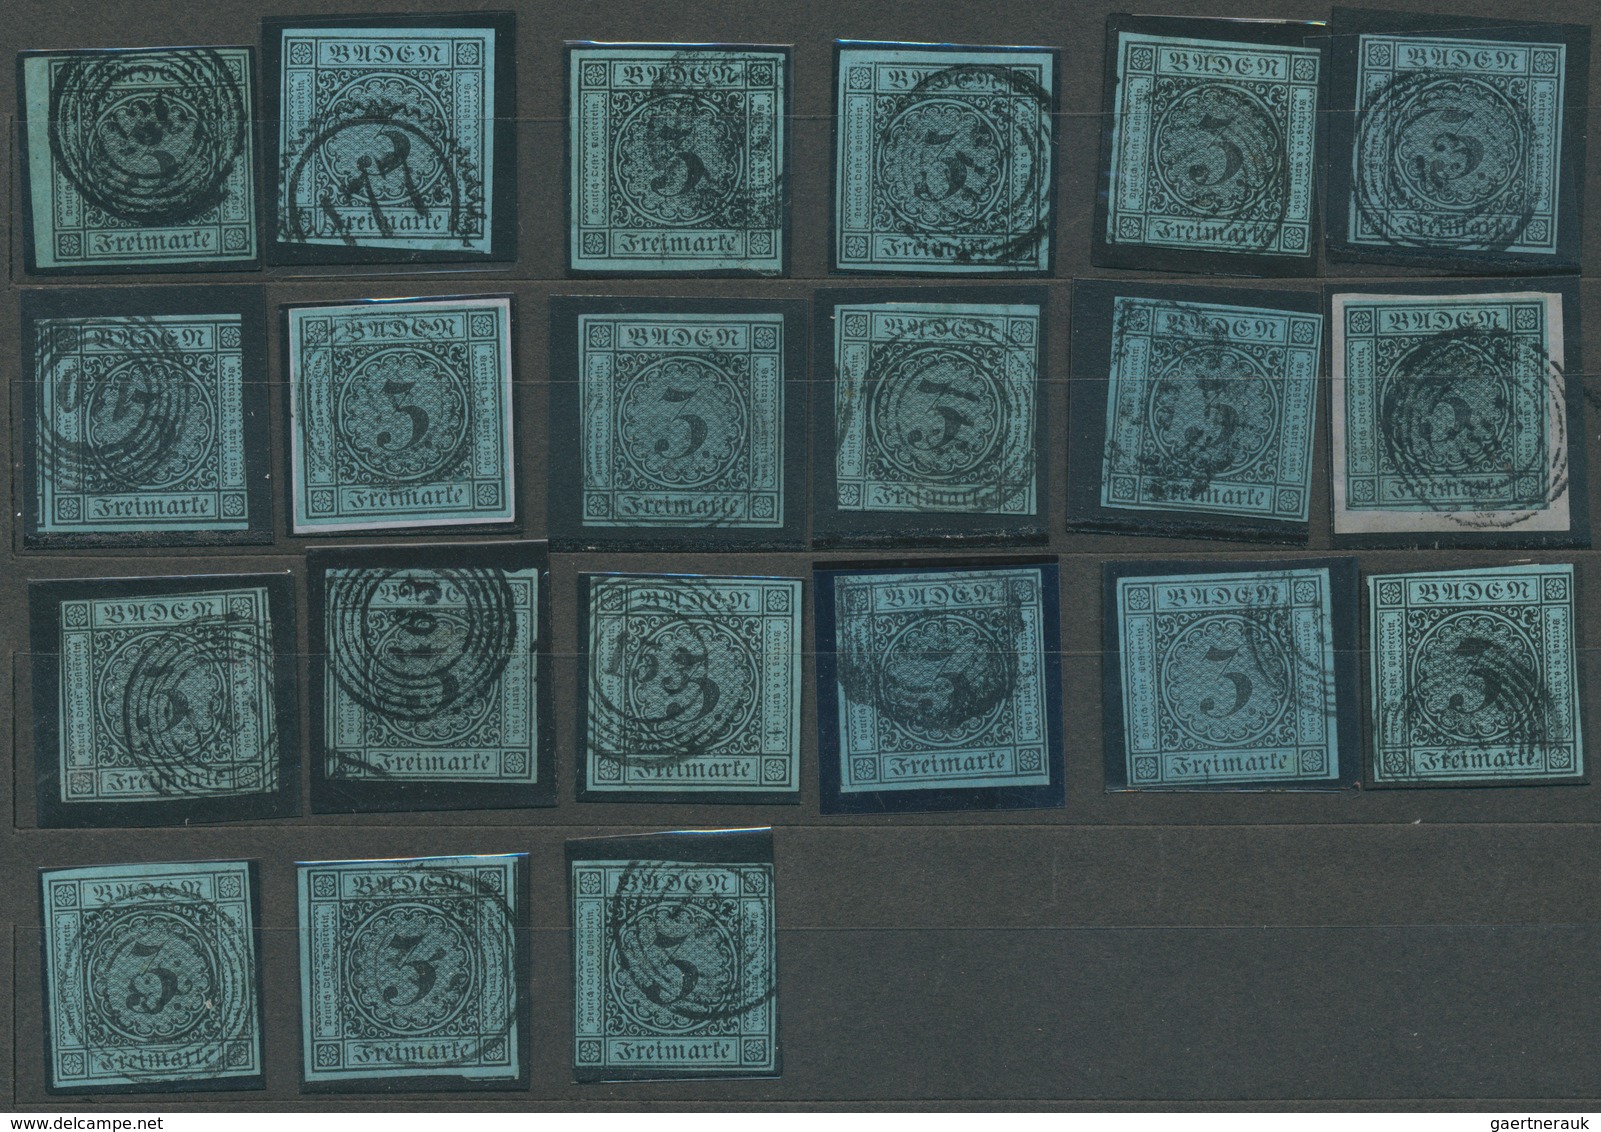 Baden - Marken und Briefe: 1851/67, Umfangreicher Posten von fast fünfzig großen Steckkarten (meist